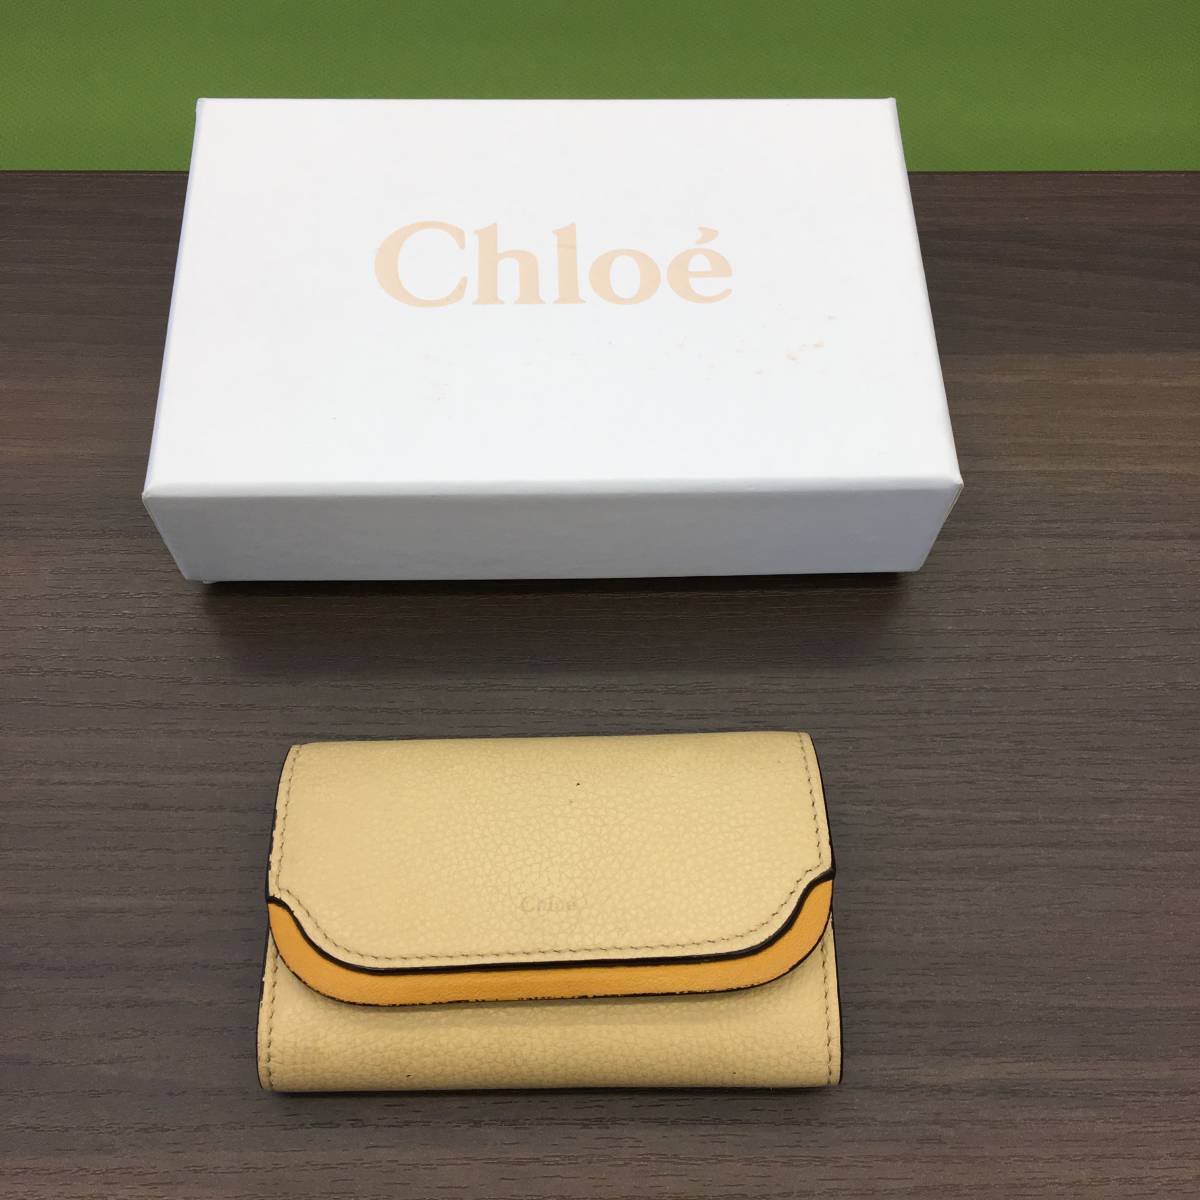 全日本送料無料 Chloe クロエ キーケース 箱付き 超定番 保存袋 6連